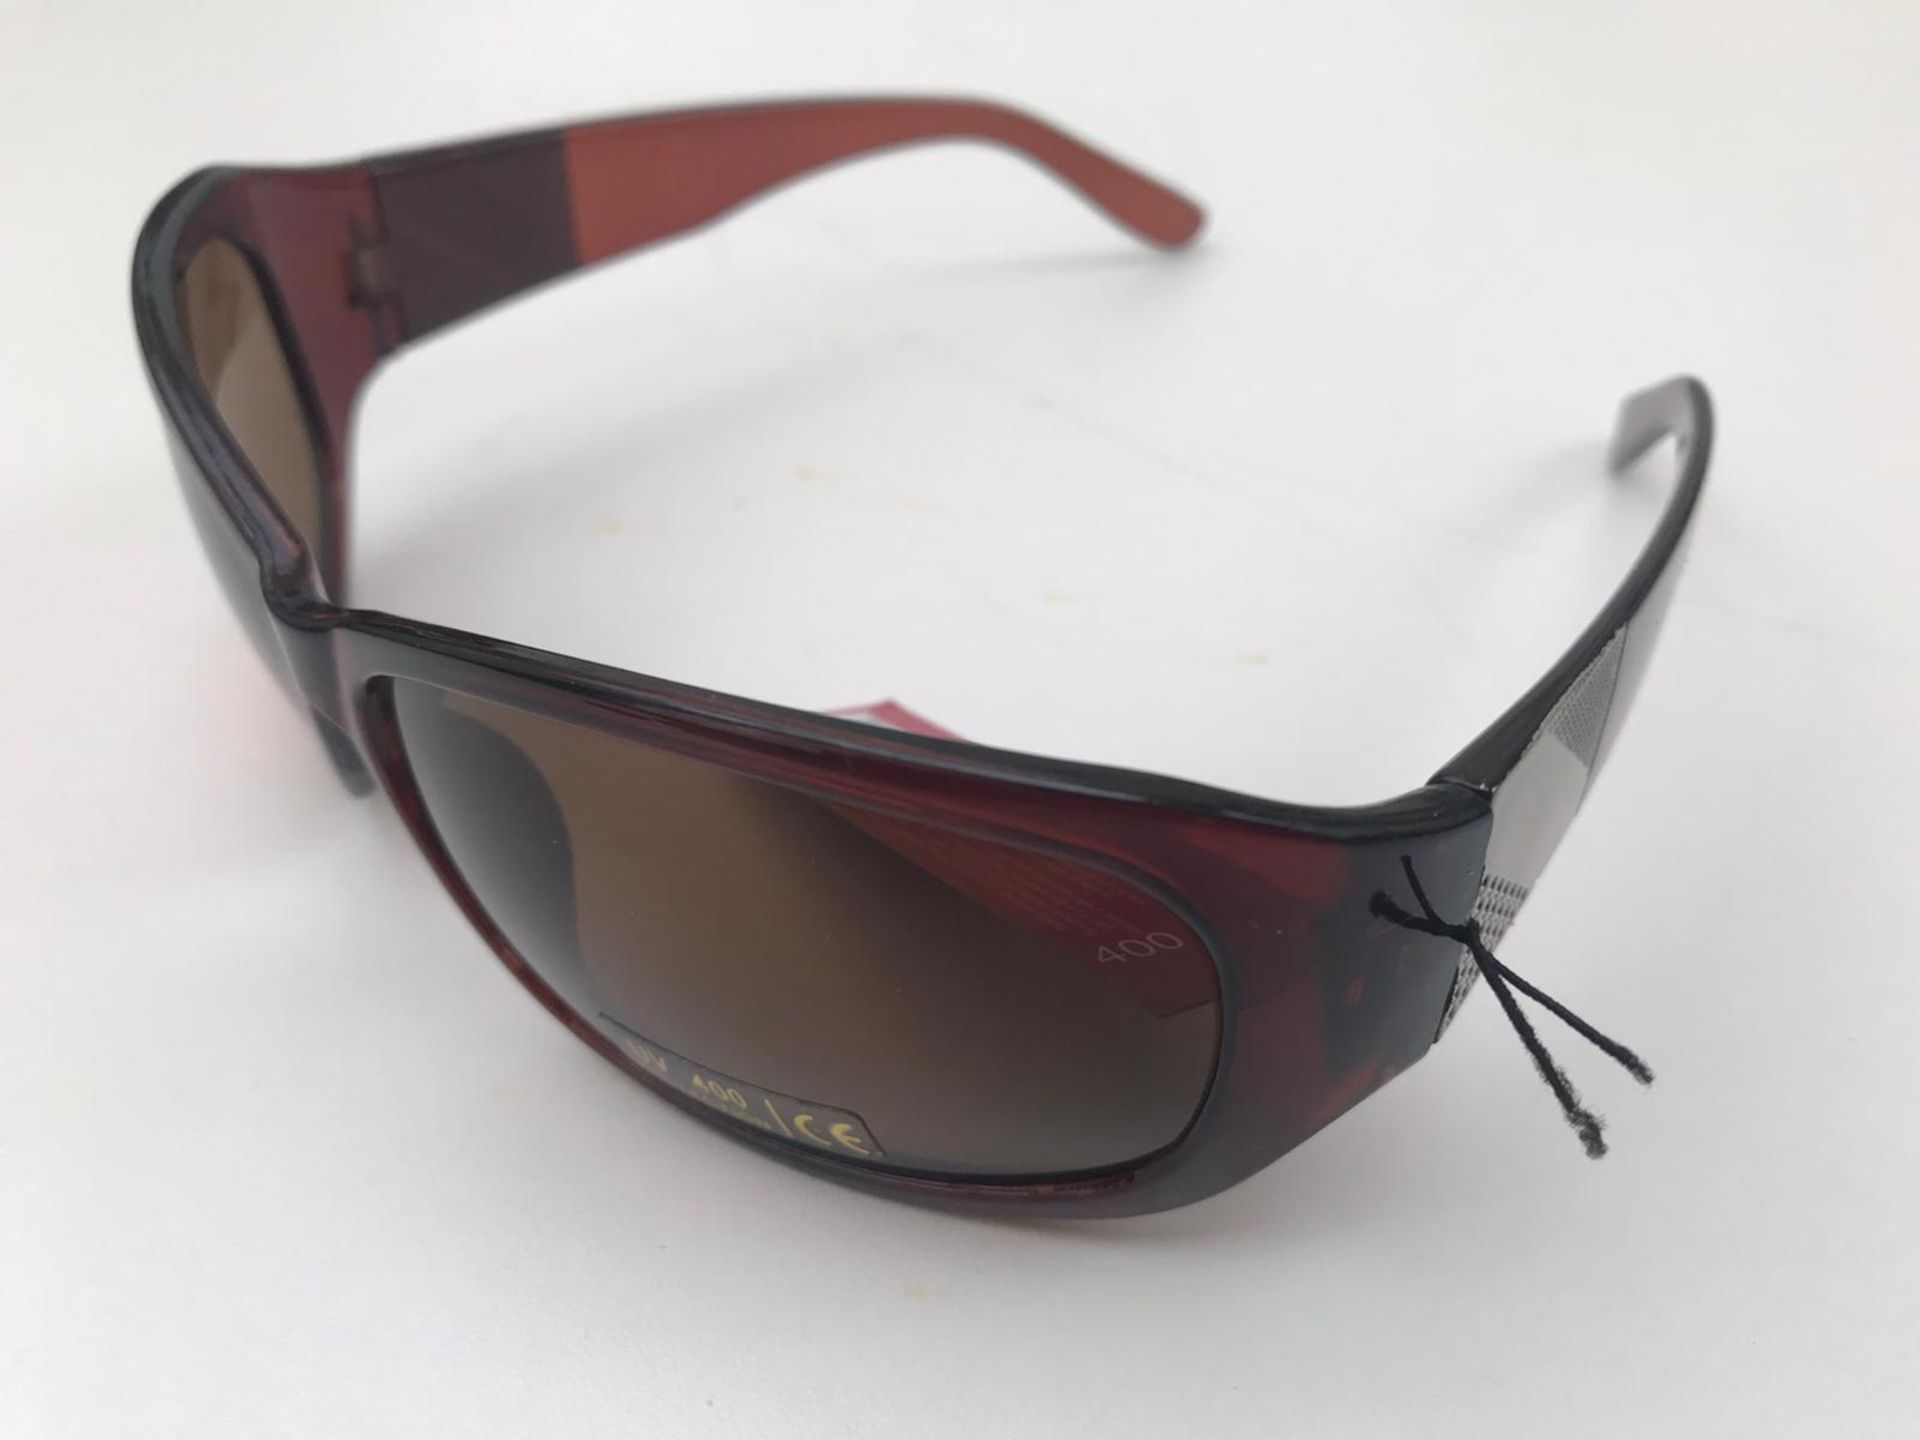 500x La Lu Branded Sunglasses | Various Styles | Unopened & Unused - Image 10 of 33